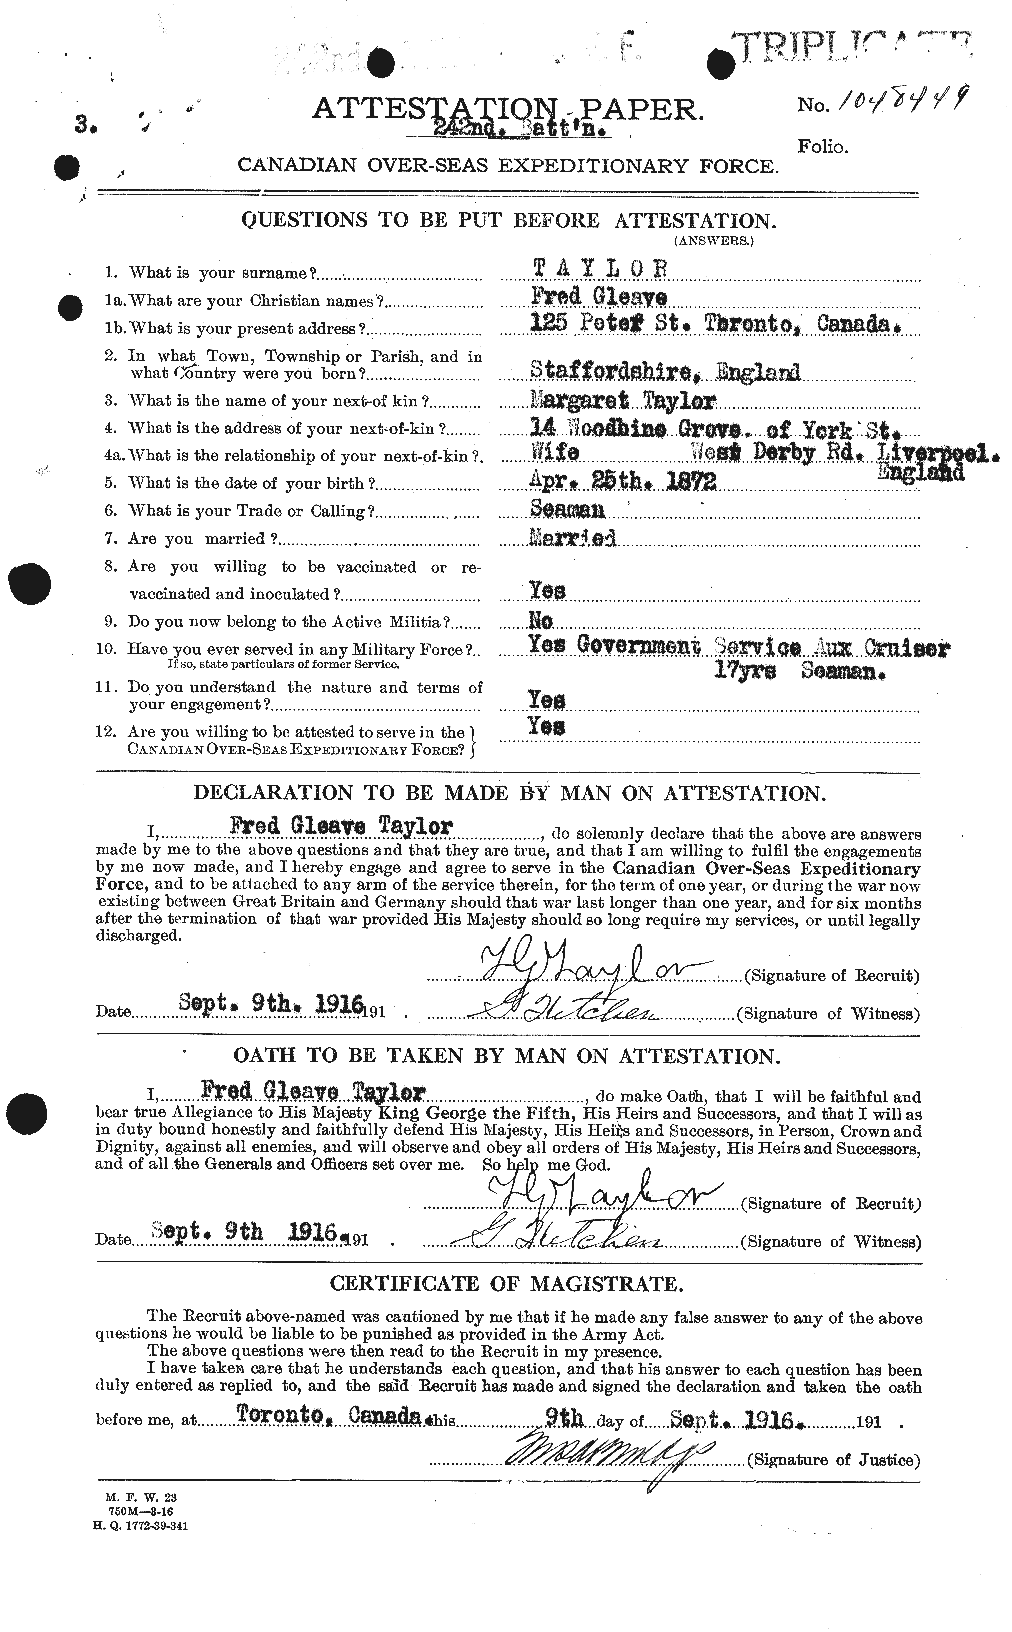 Dossiers du Personnel de la Première Guerre mondiale - CEC 625752a